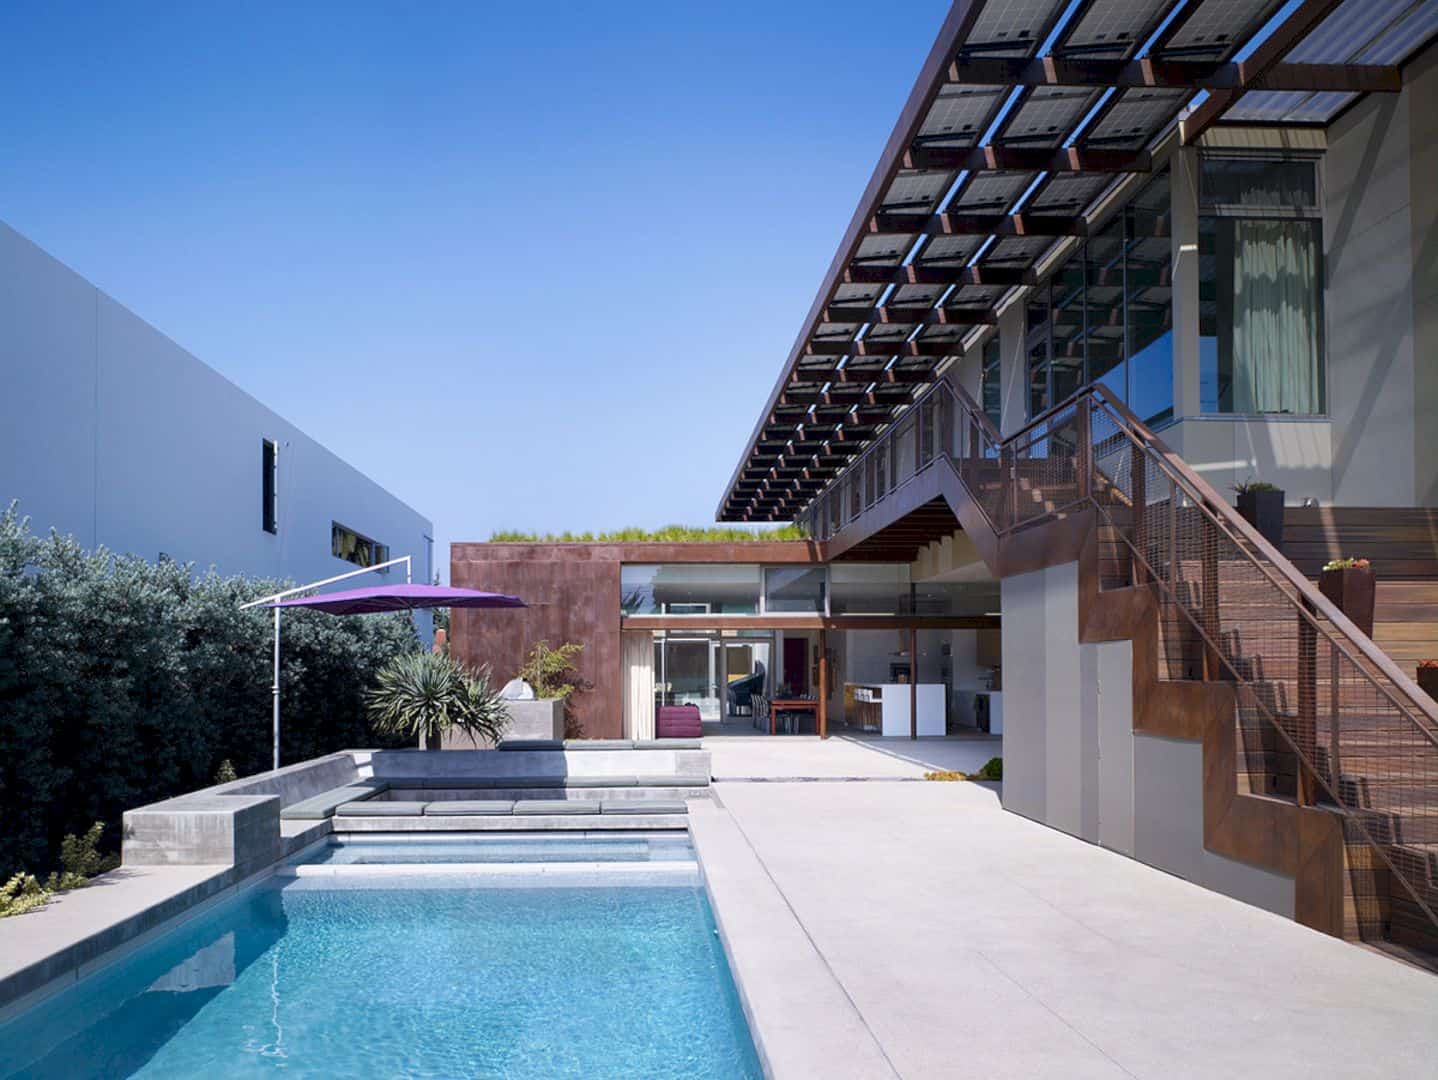 The Yin Yang House A Net Zero Energy Family Home In Quiet California Neighborhood 12